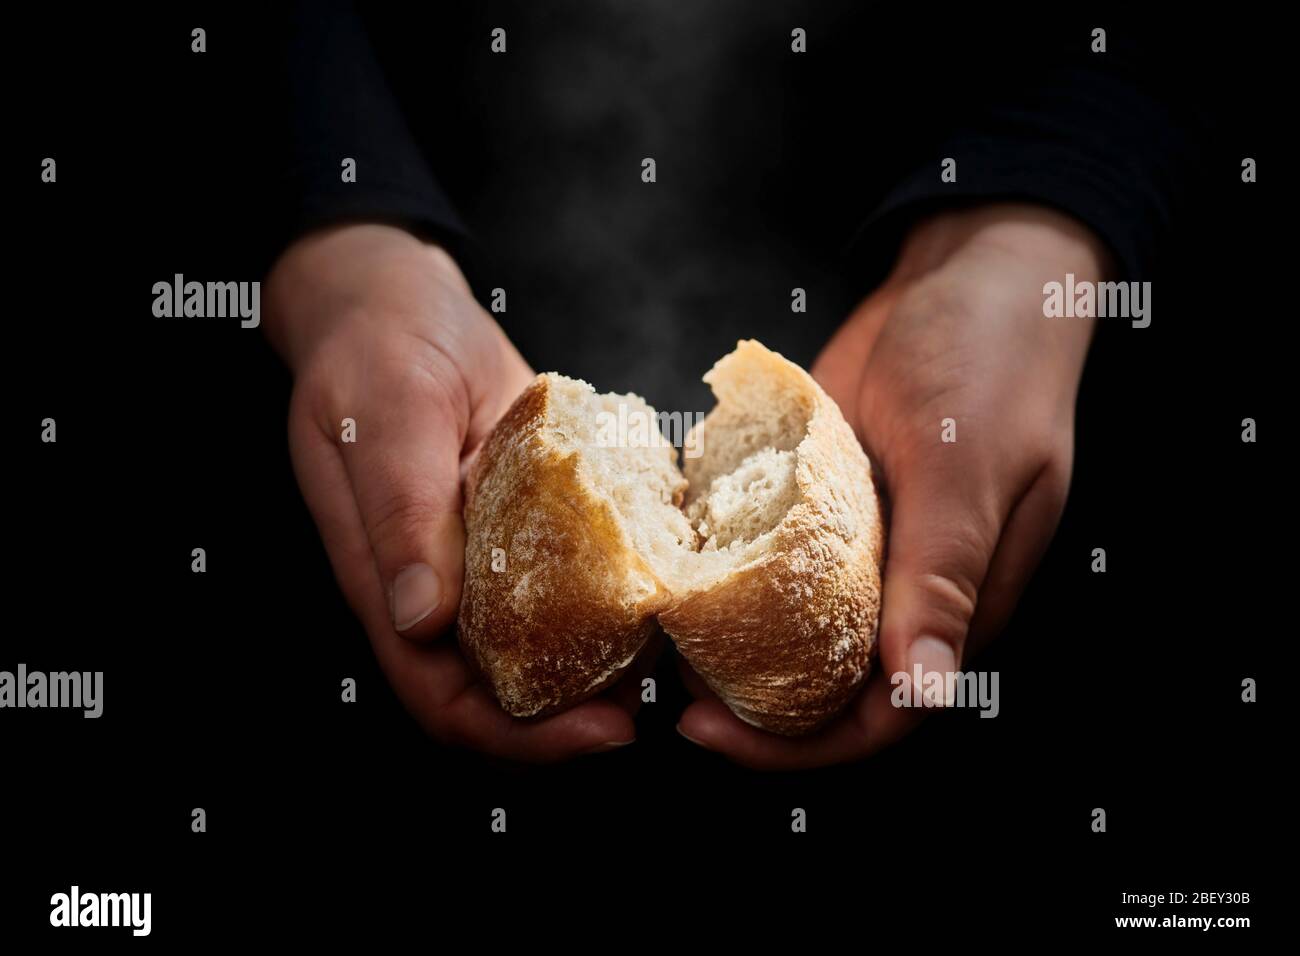 Hands break a fresh, still steaming bun... Stock Photo